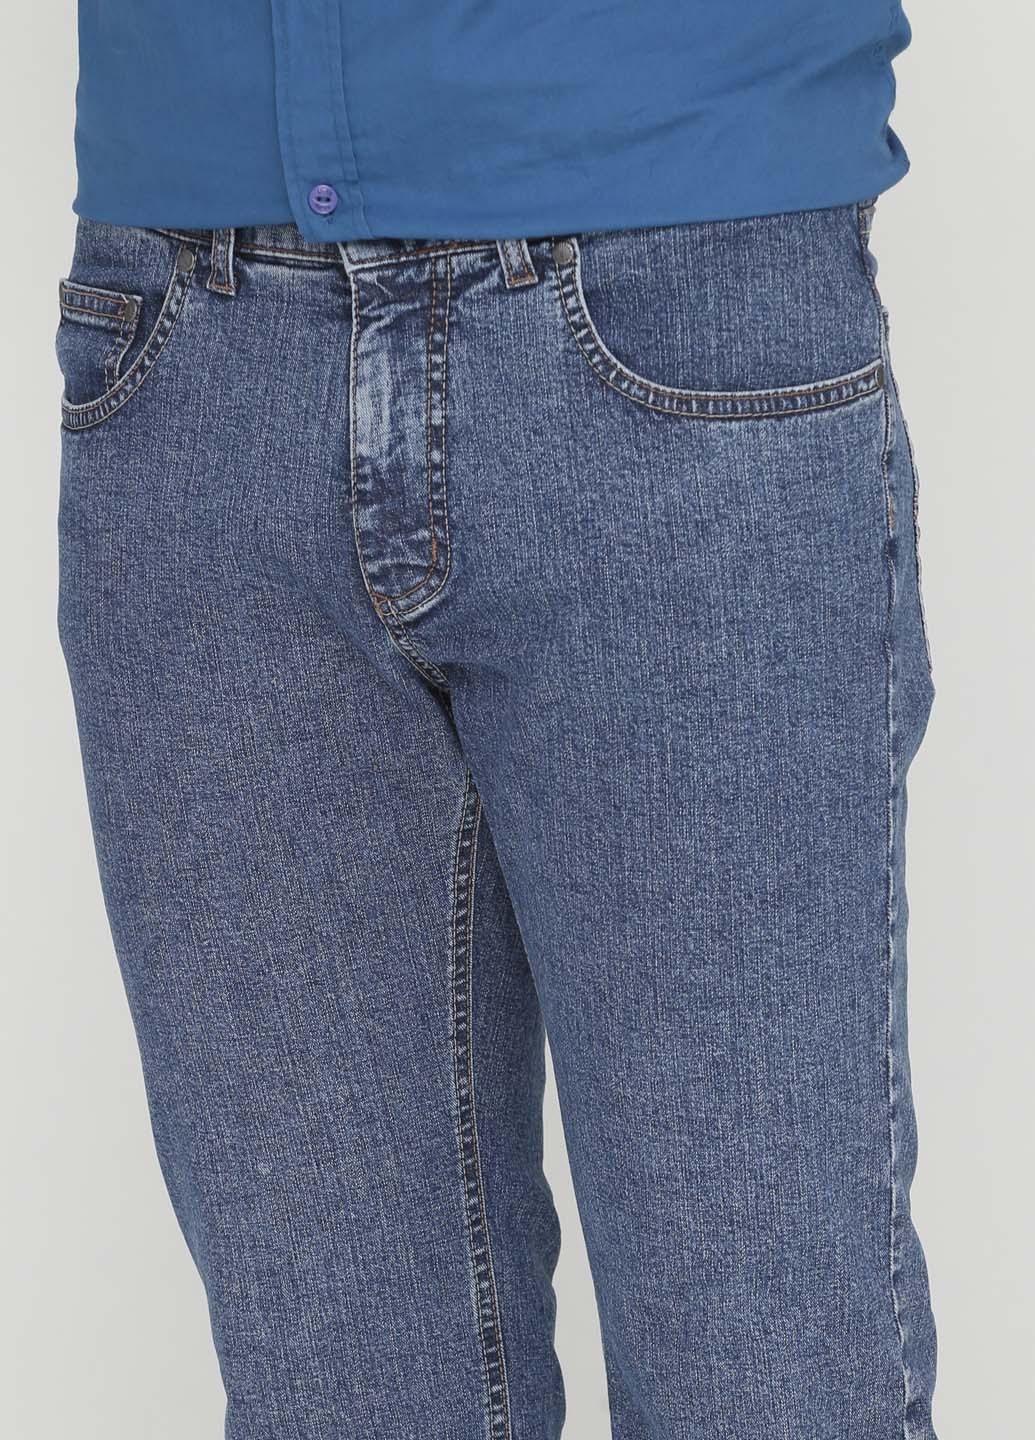 Синие демисезонные джинсы Pioneer